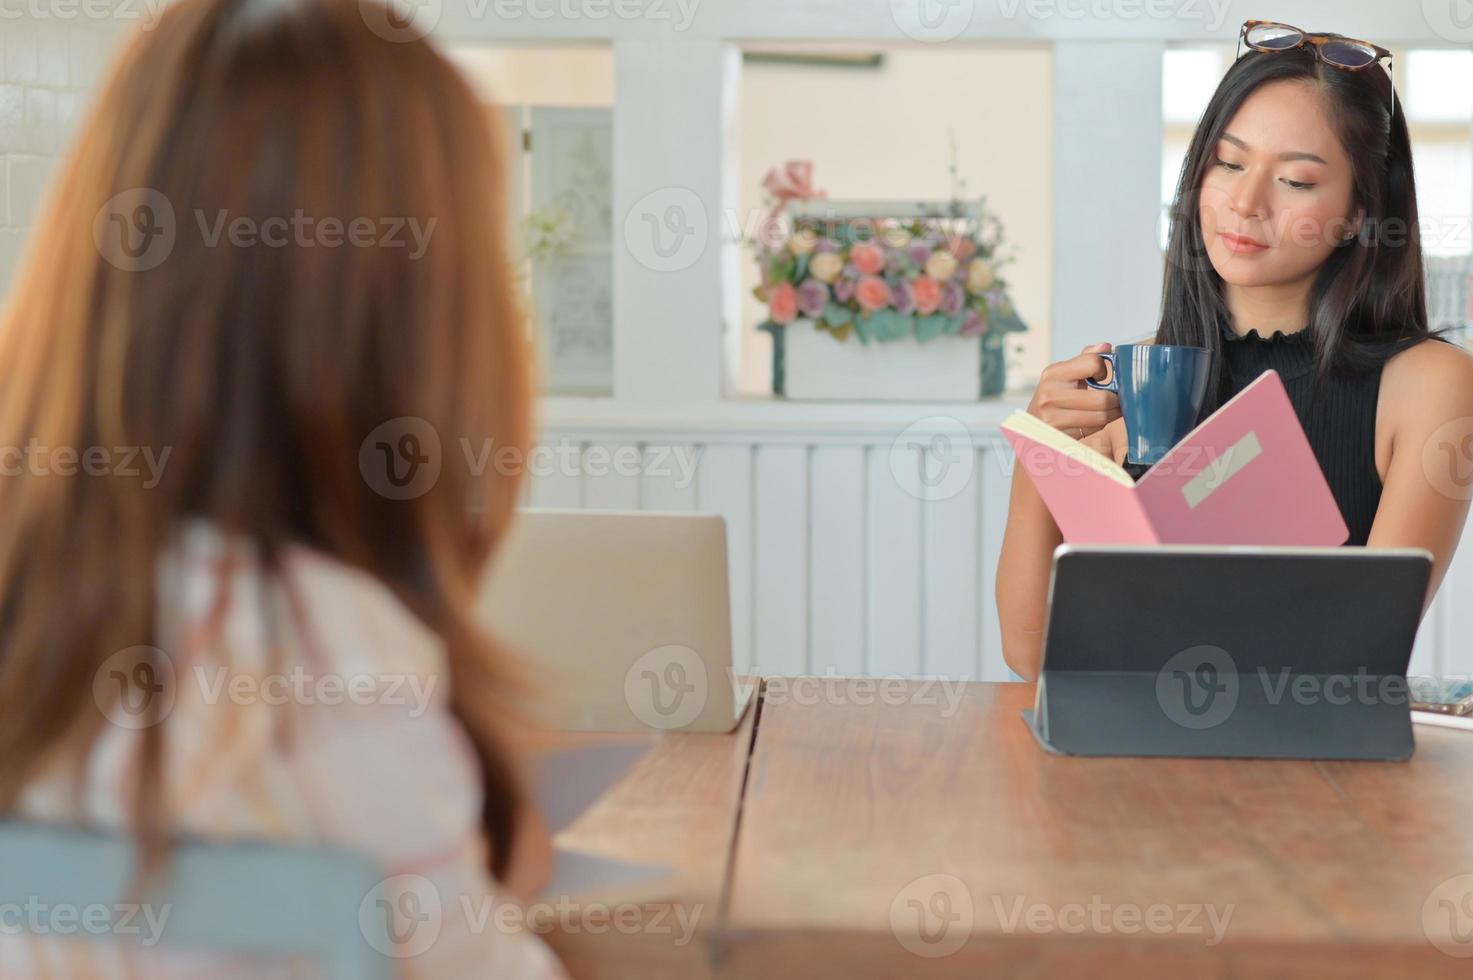 empresária segurando uma xícara de café e um arquivo nas mãos. ela está verificando se há pedidos de emprego em seu currículo. foto